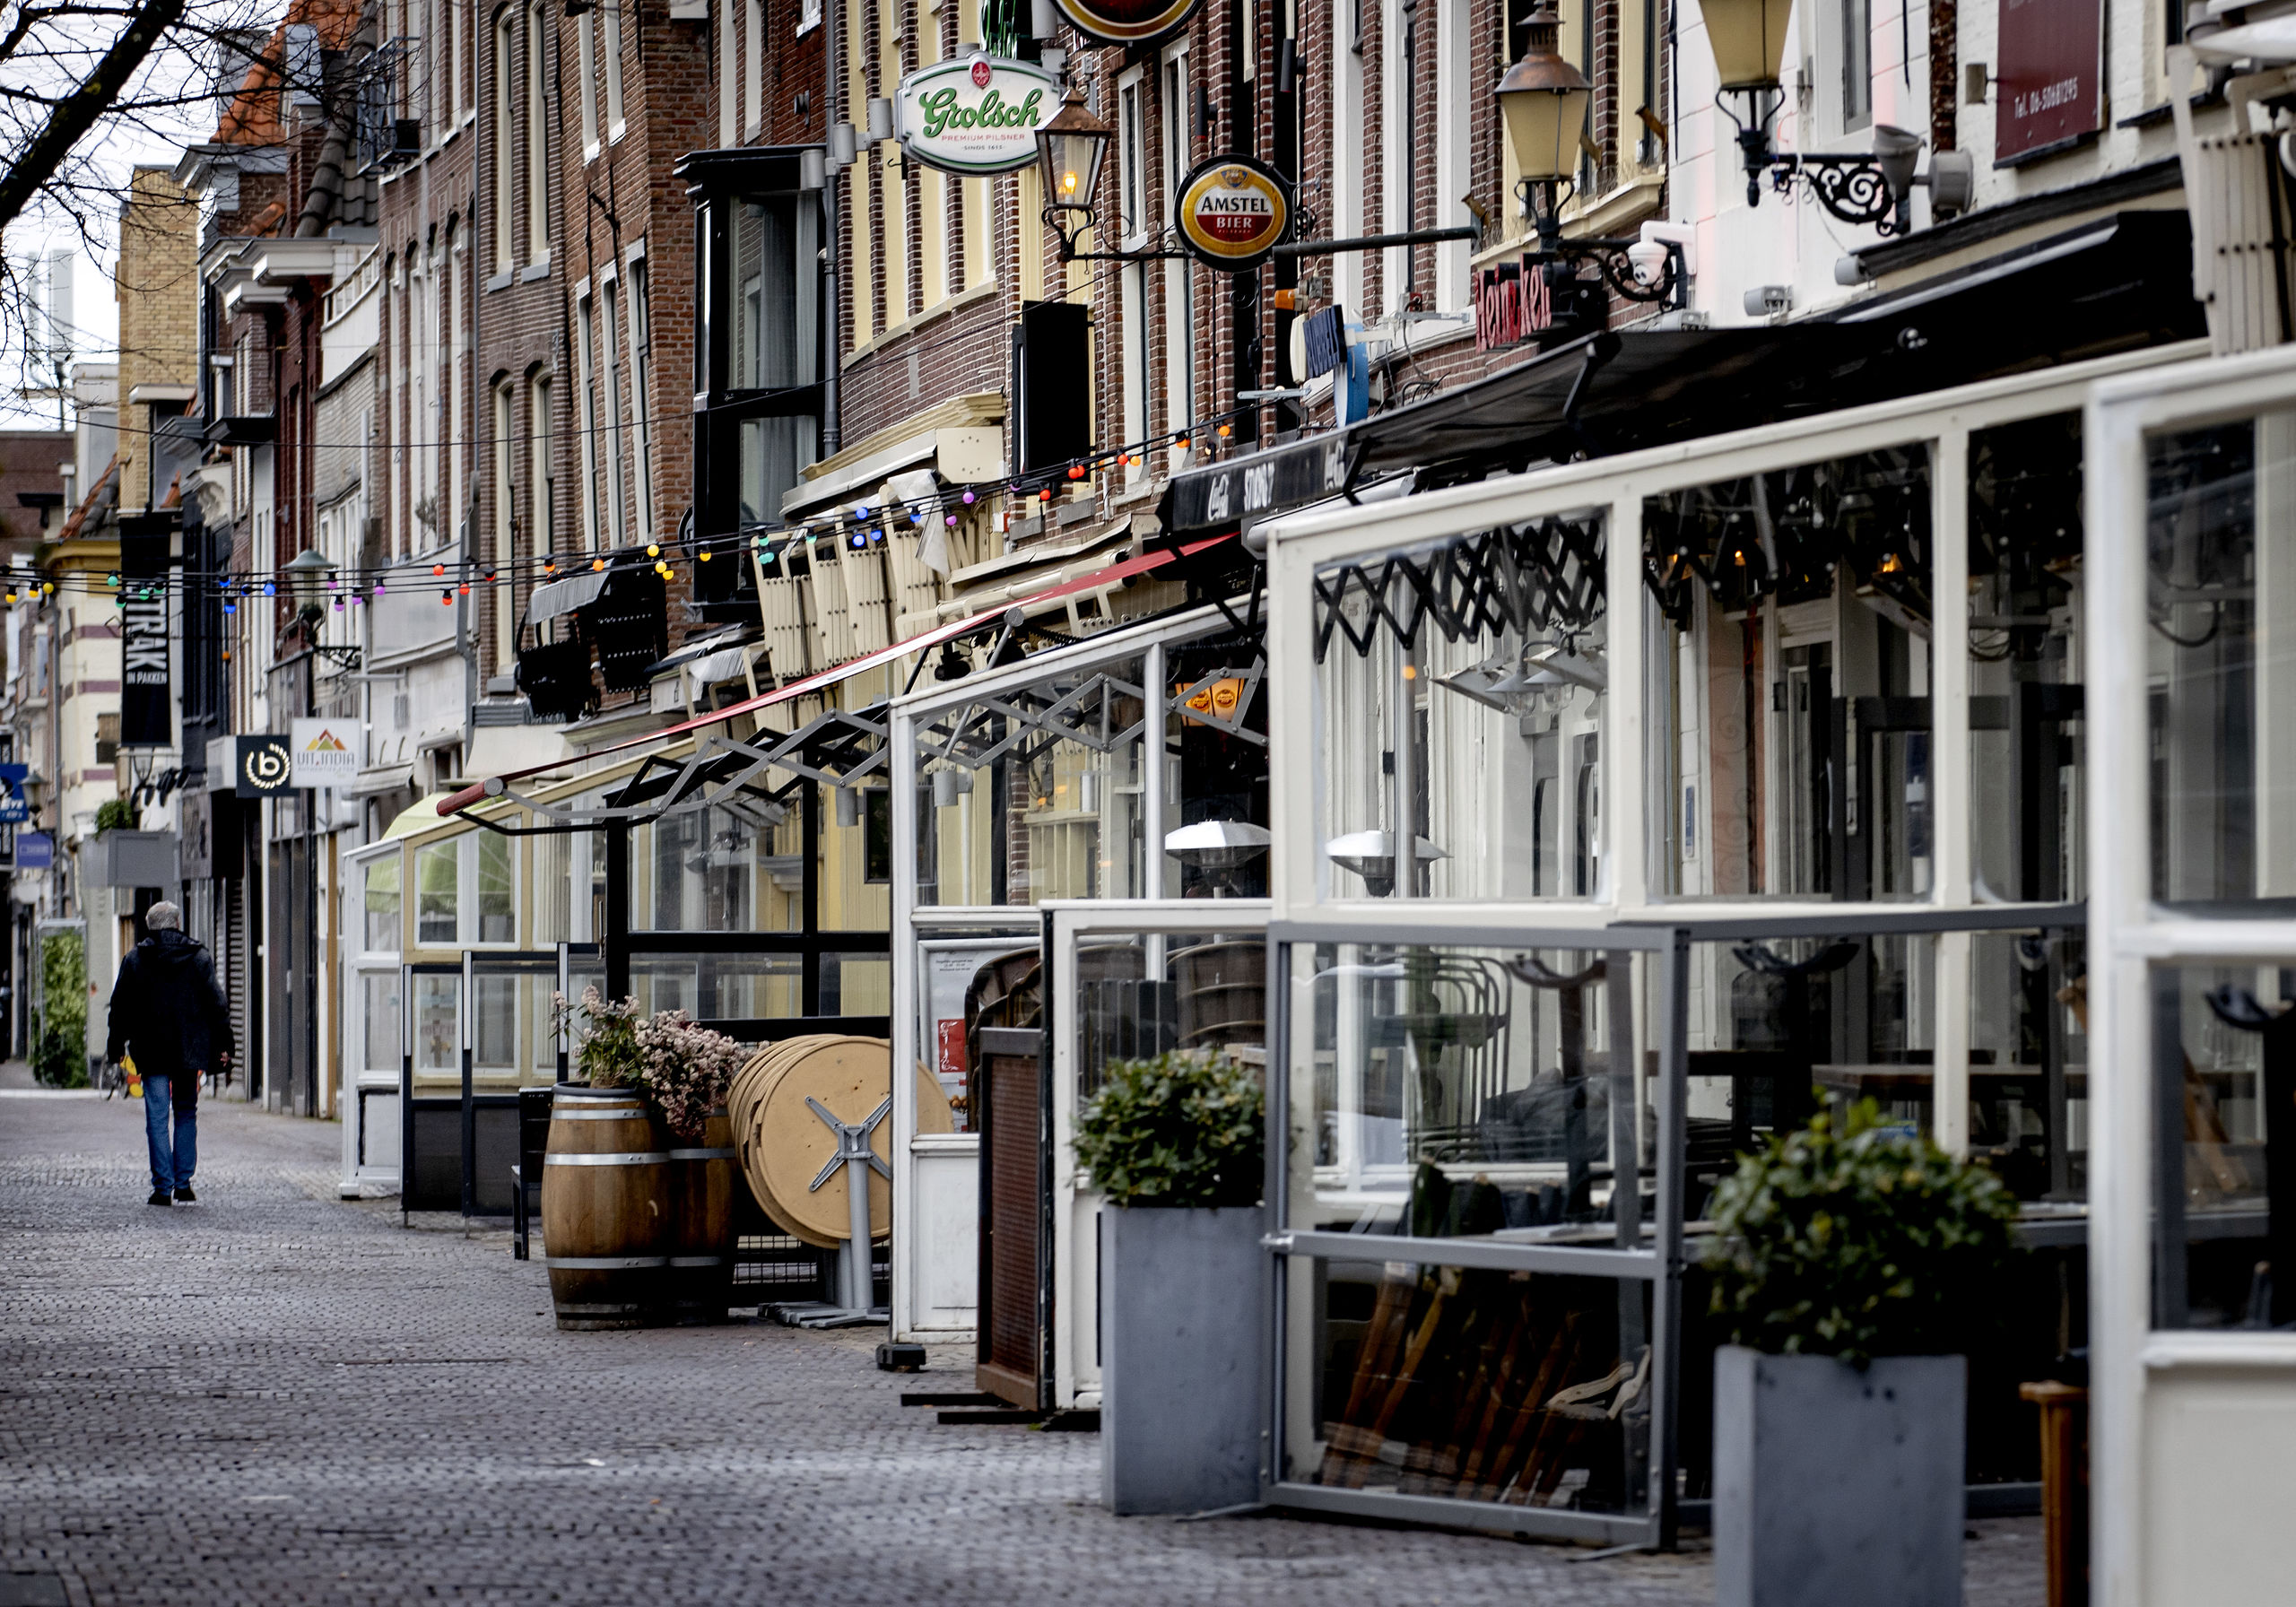 Gesloten horecazaken in Alkmaar.